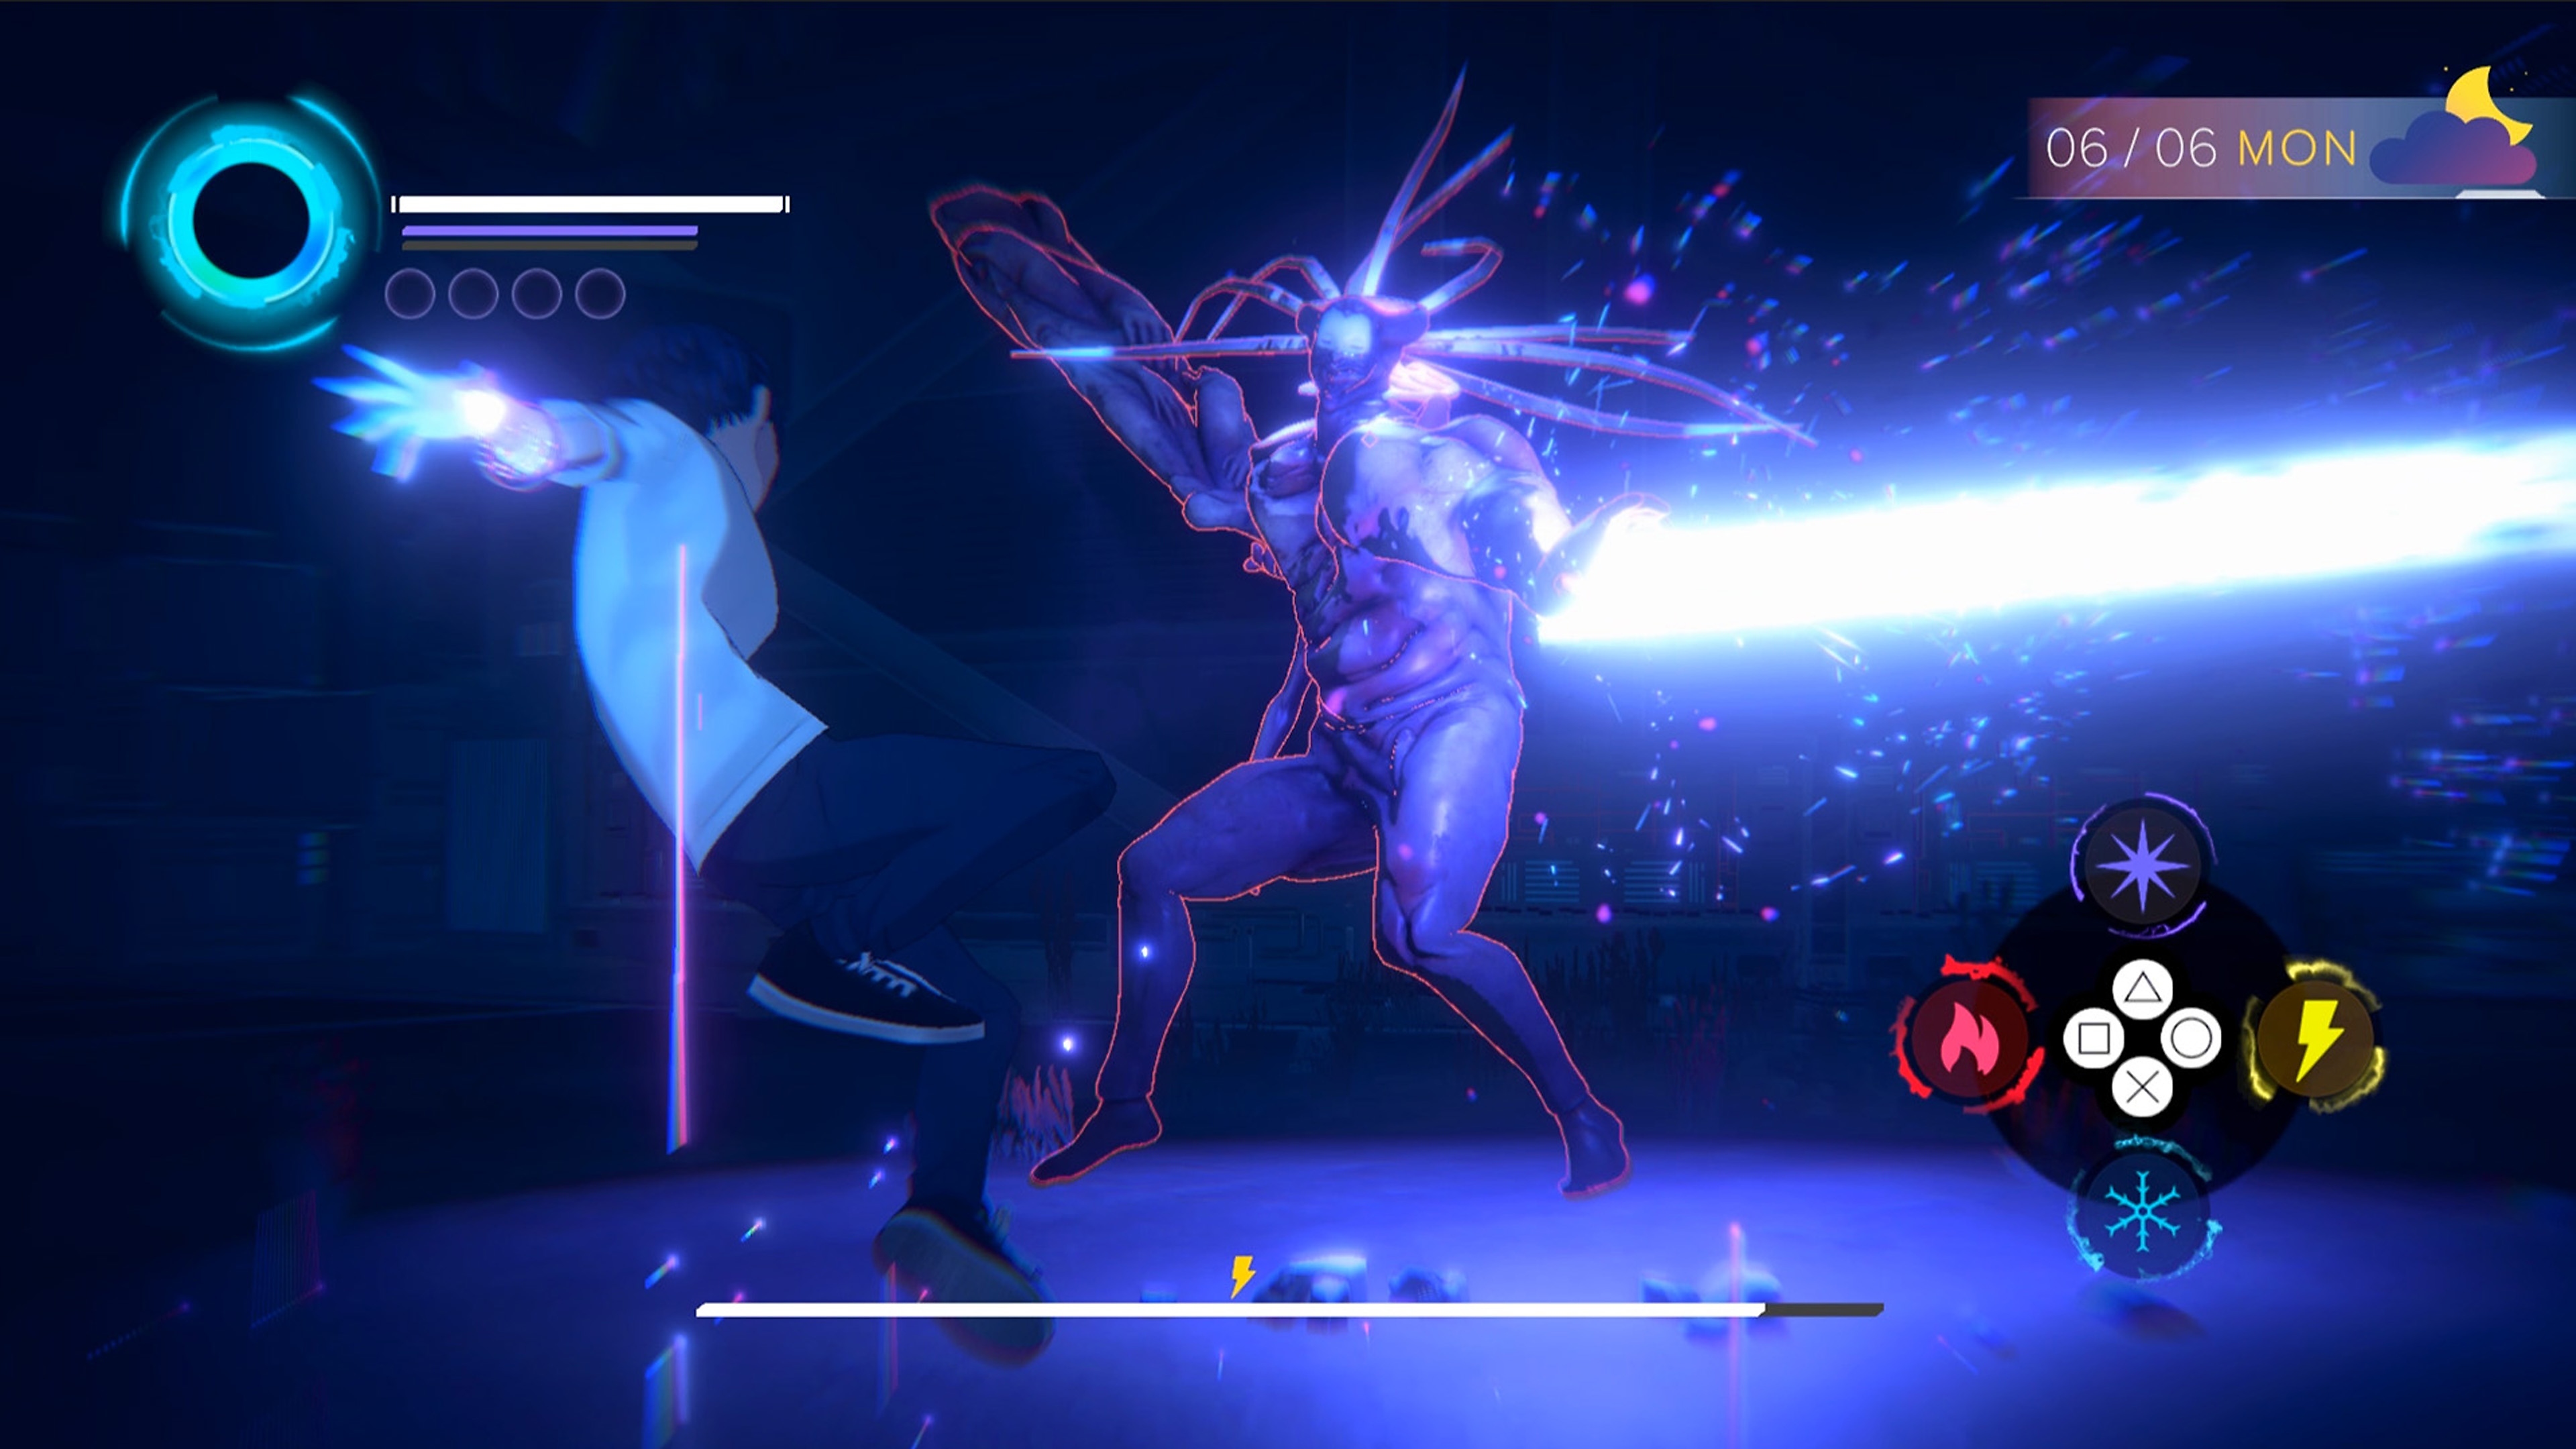 Eternights - Istantanea della schermata che mostra un personaggio liceale che combatte contro un'enorme creatura demoniaca umanoide.